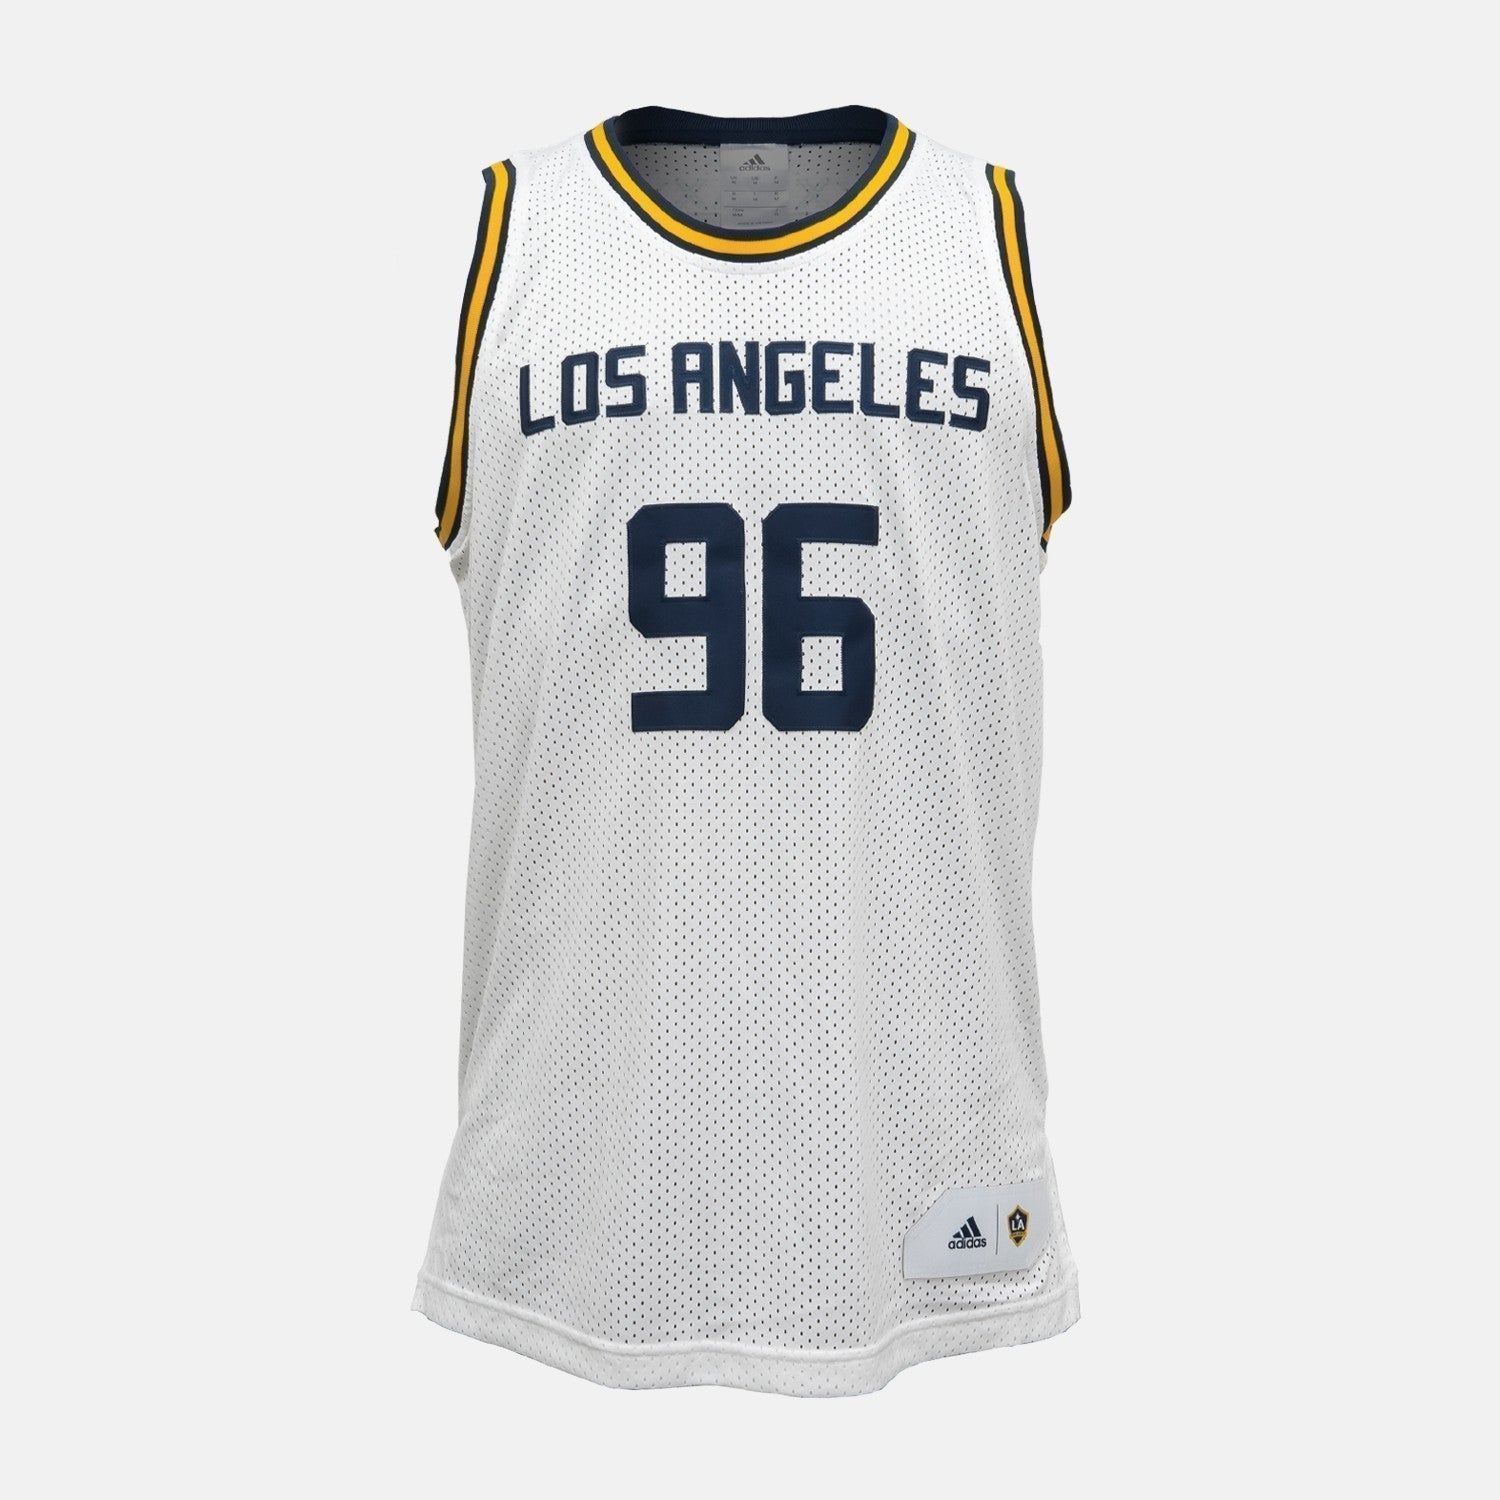 Buy Los Angeles Lakers Jerseys & Teamwear